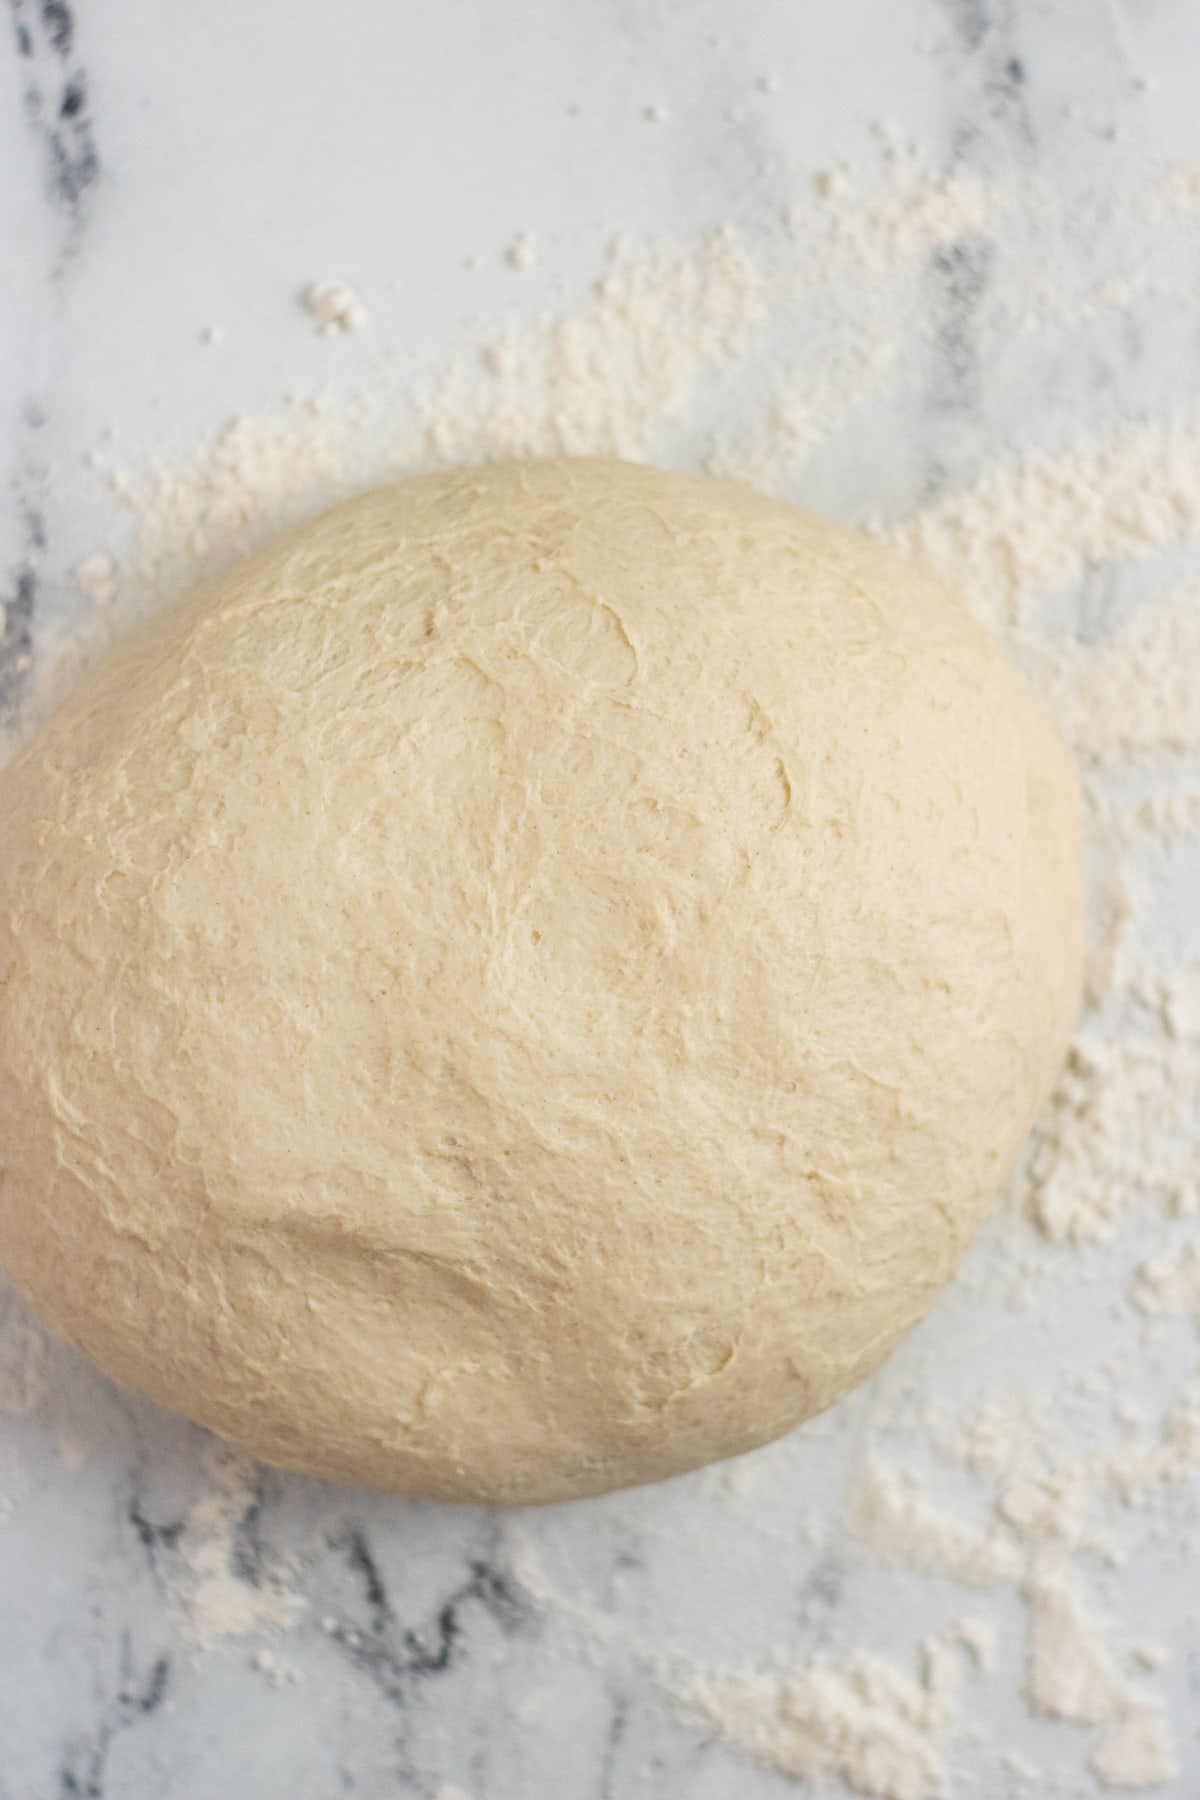 Pretzel dough on countertop